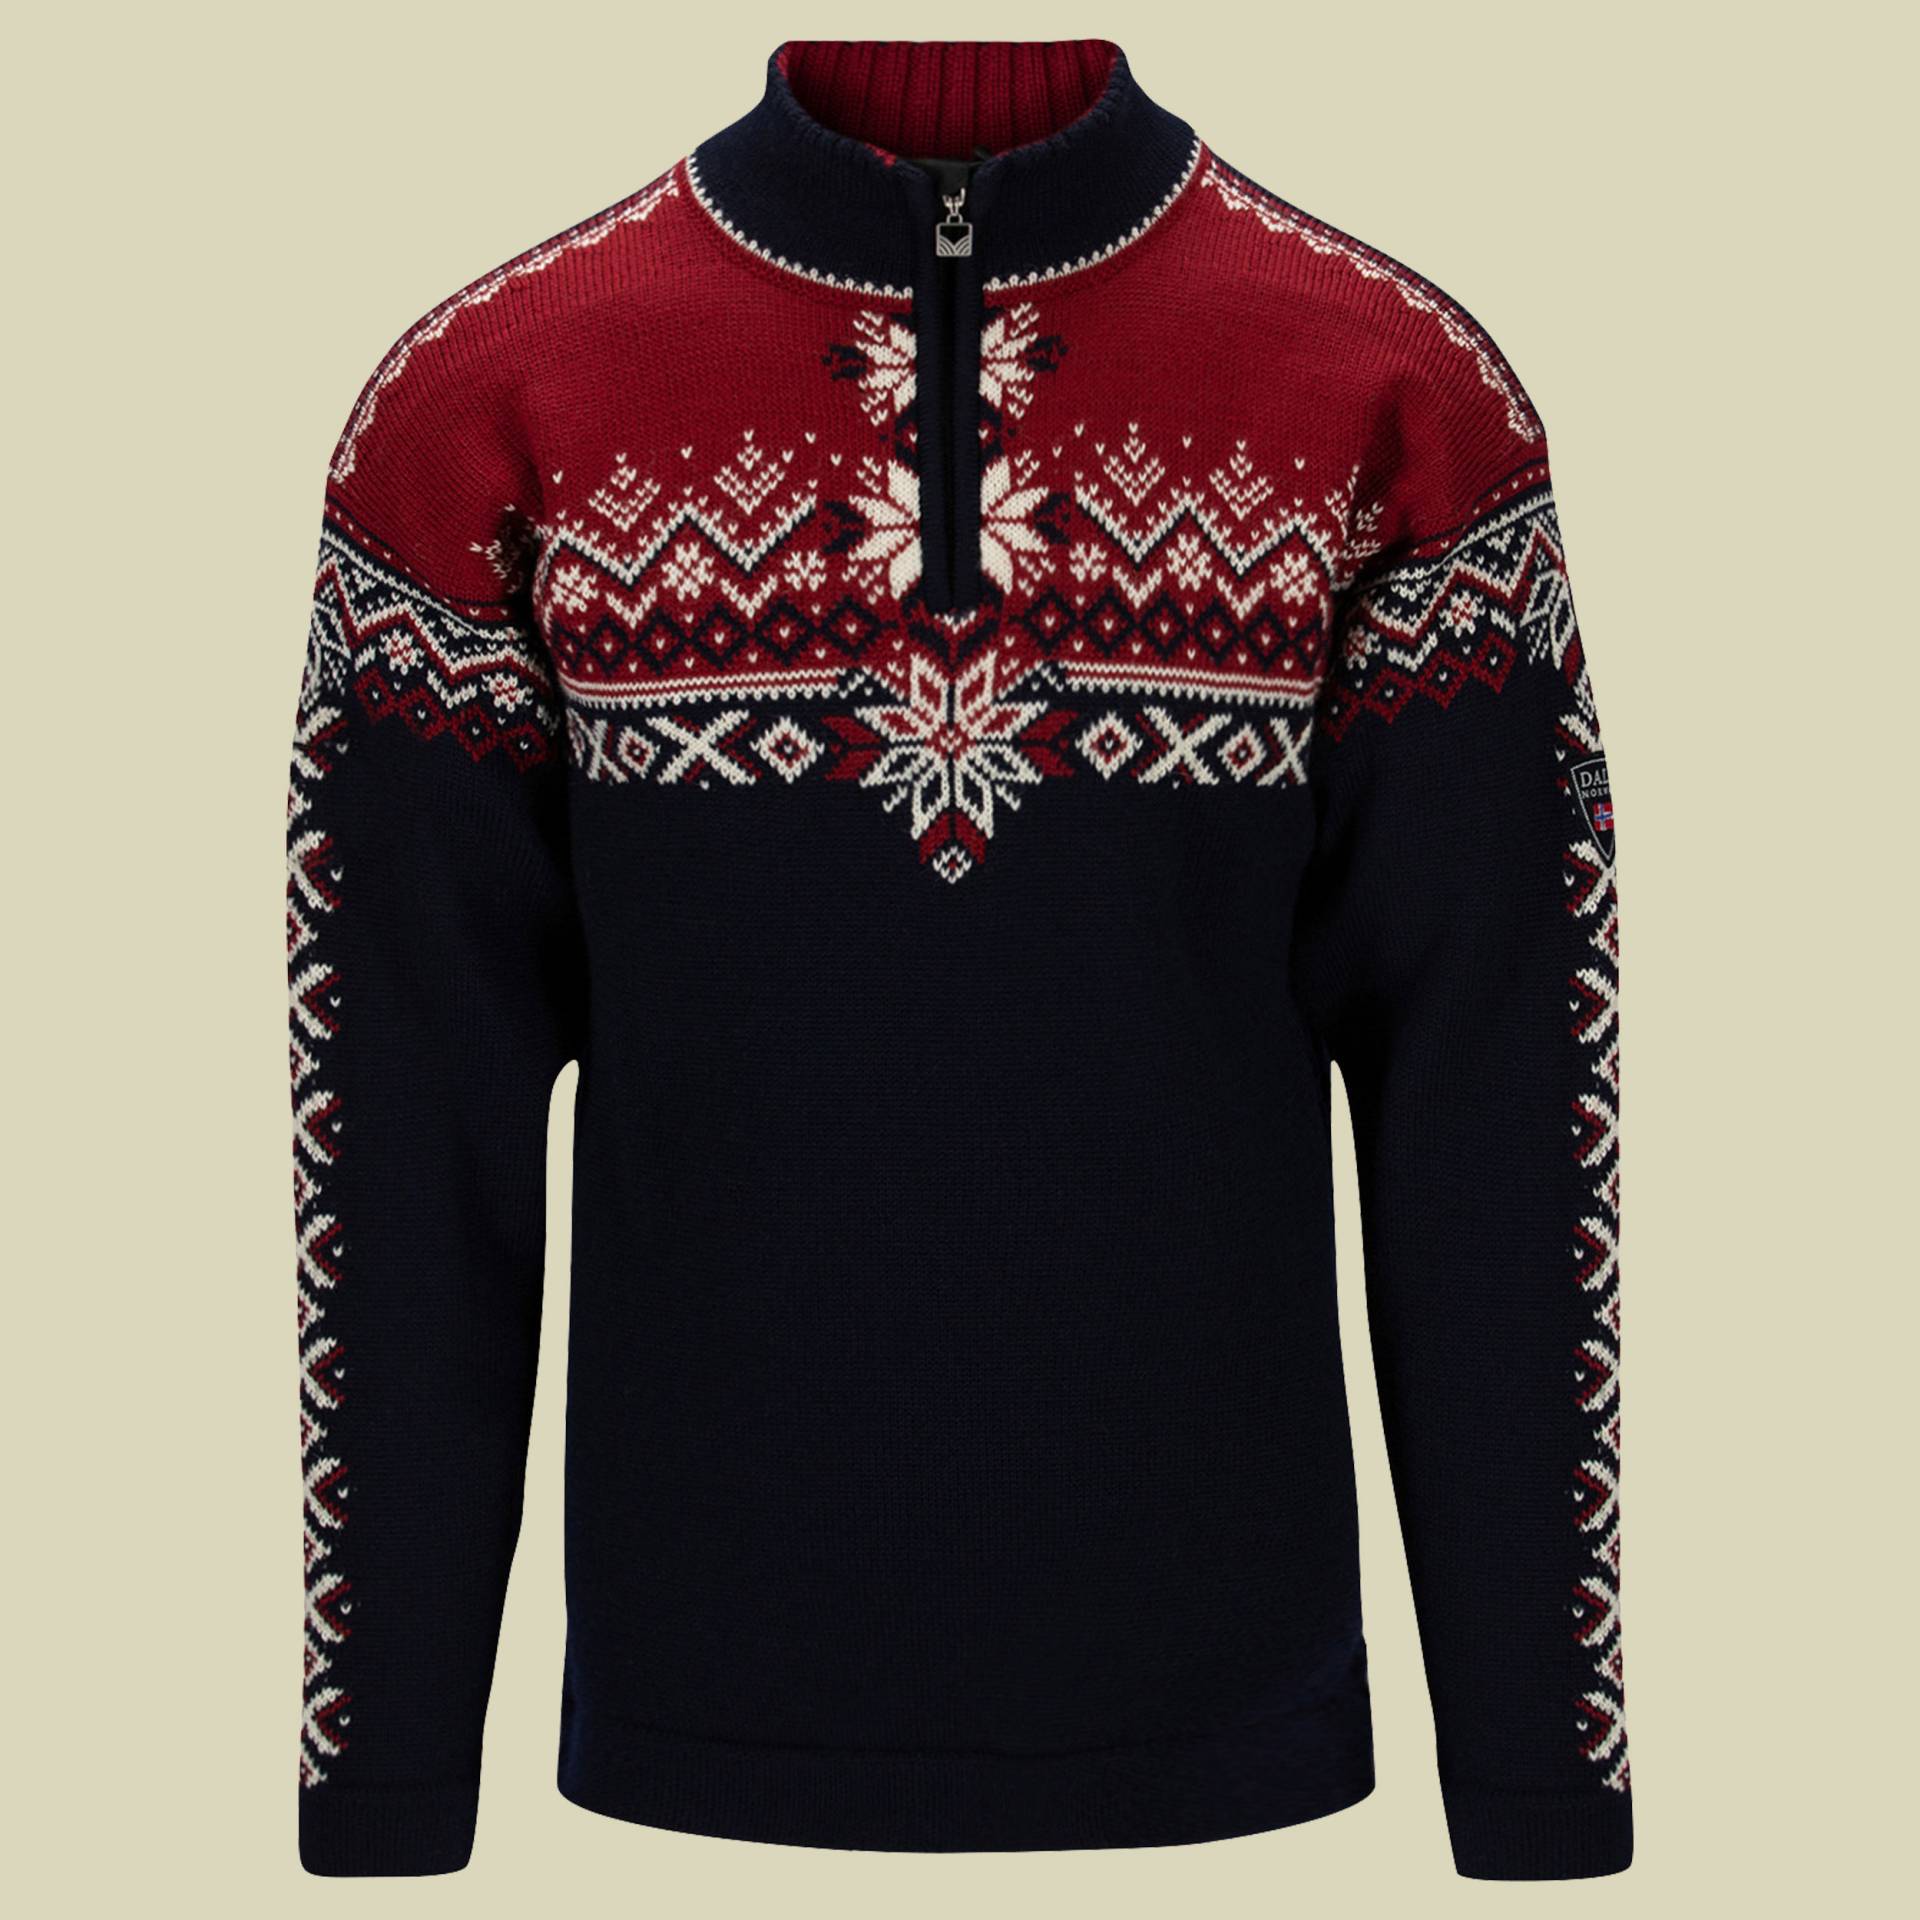 140th Anniversary Sweater Men Größe XXL Farbe navy/red rose/off white von Dale of Norway